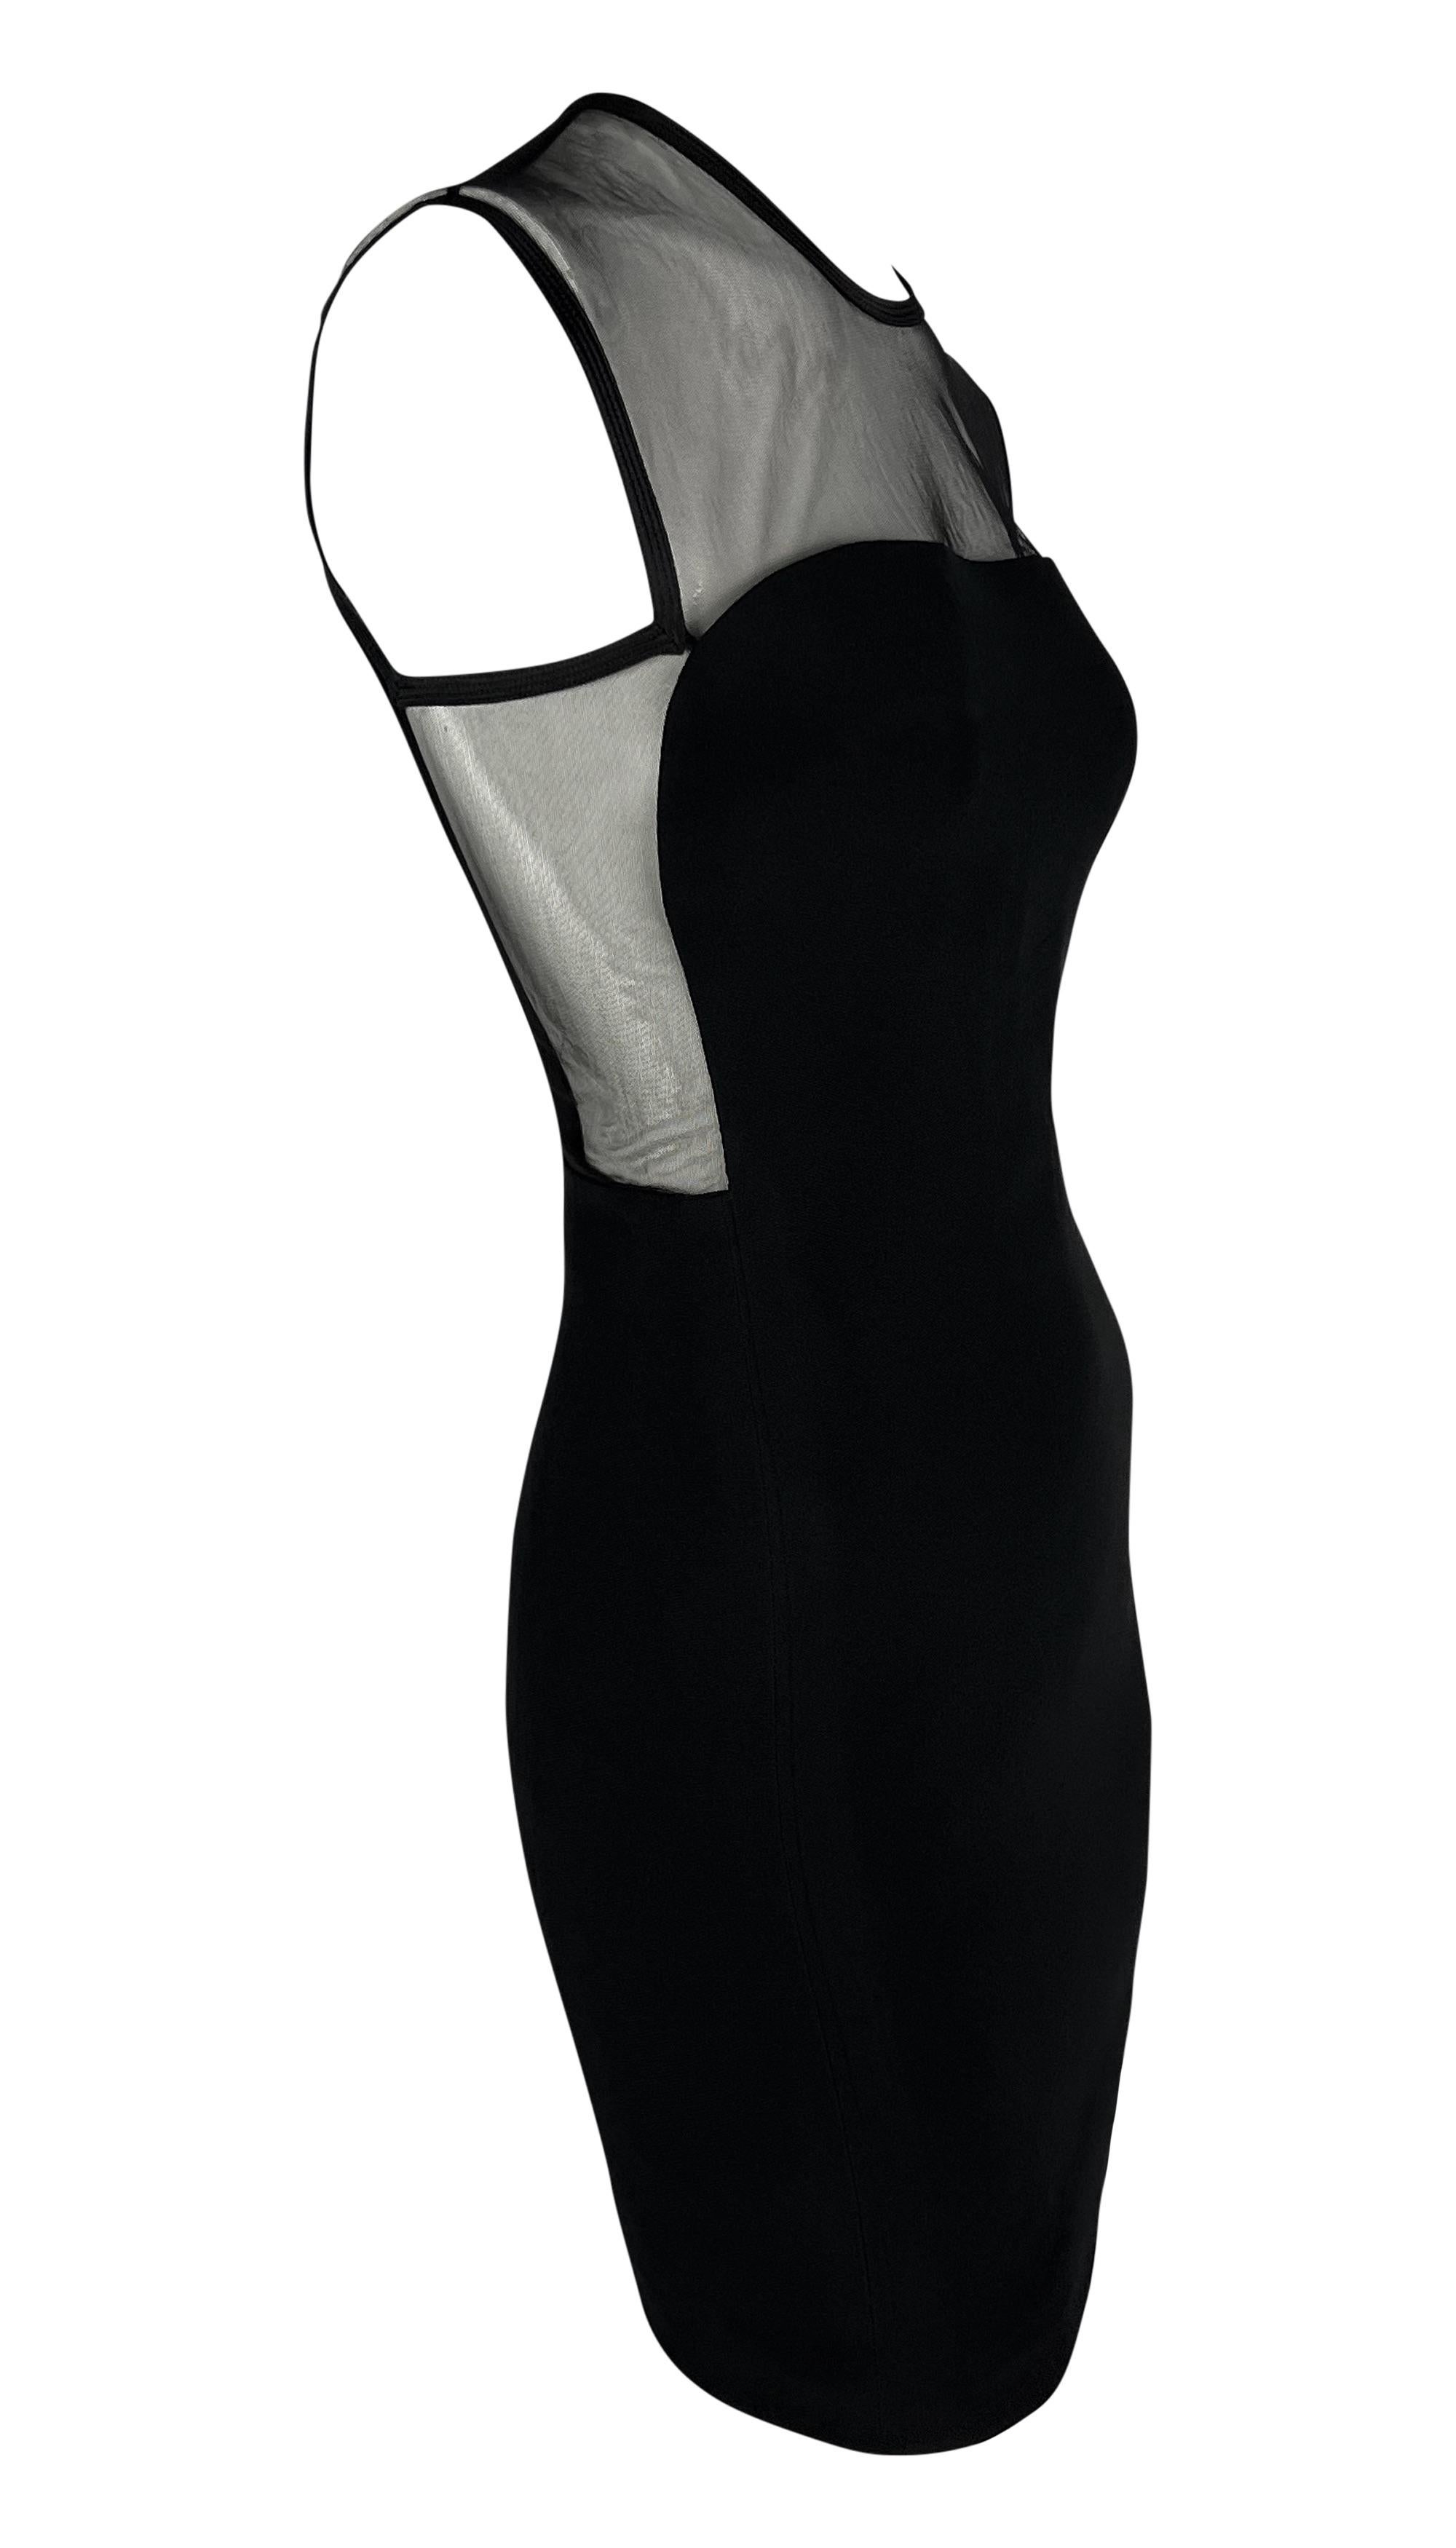 Women's S/S 1996 Gianni Versace Black Sheer Panel Sleeveless Mesh Bodycon Dress For Sale